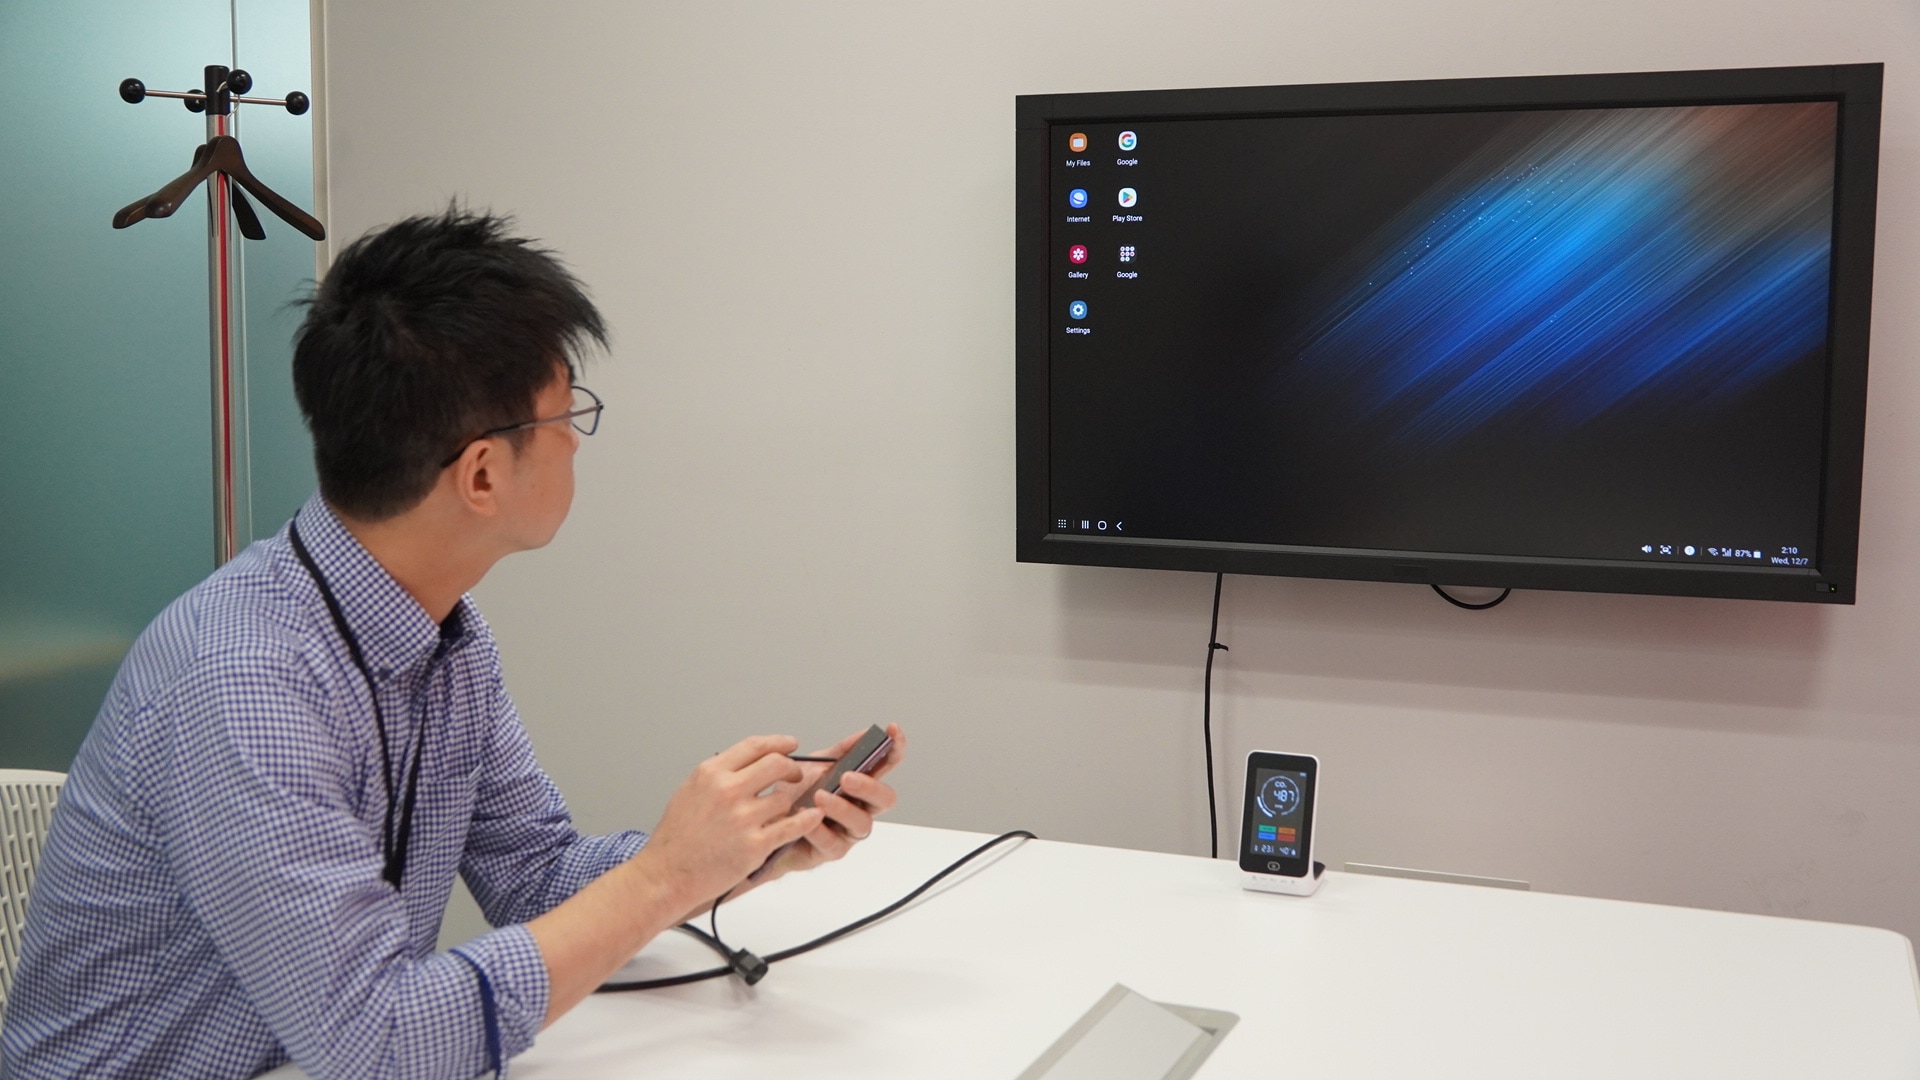 株式会社ワコム（日本法人）の社員がDex（デックス）を利用して、ディスプレイにスマートフォン画面を拡張表示している様子。